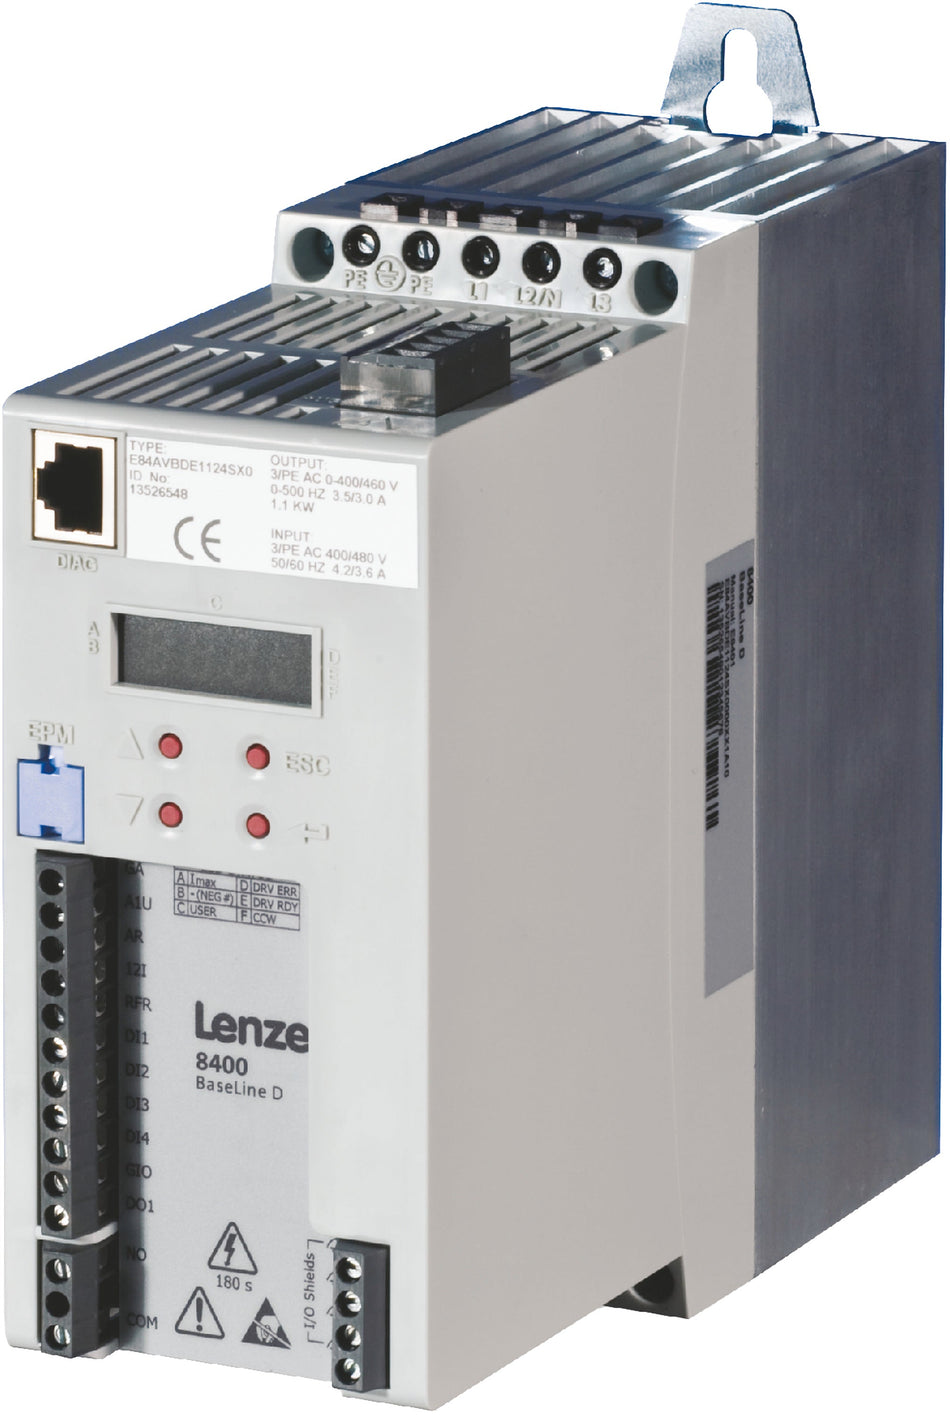 Lenze Inverter Drives 8400 BaseLine -    E84AVBCE1124SX0 1.1 kW